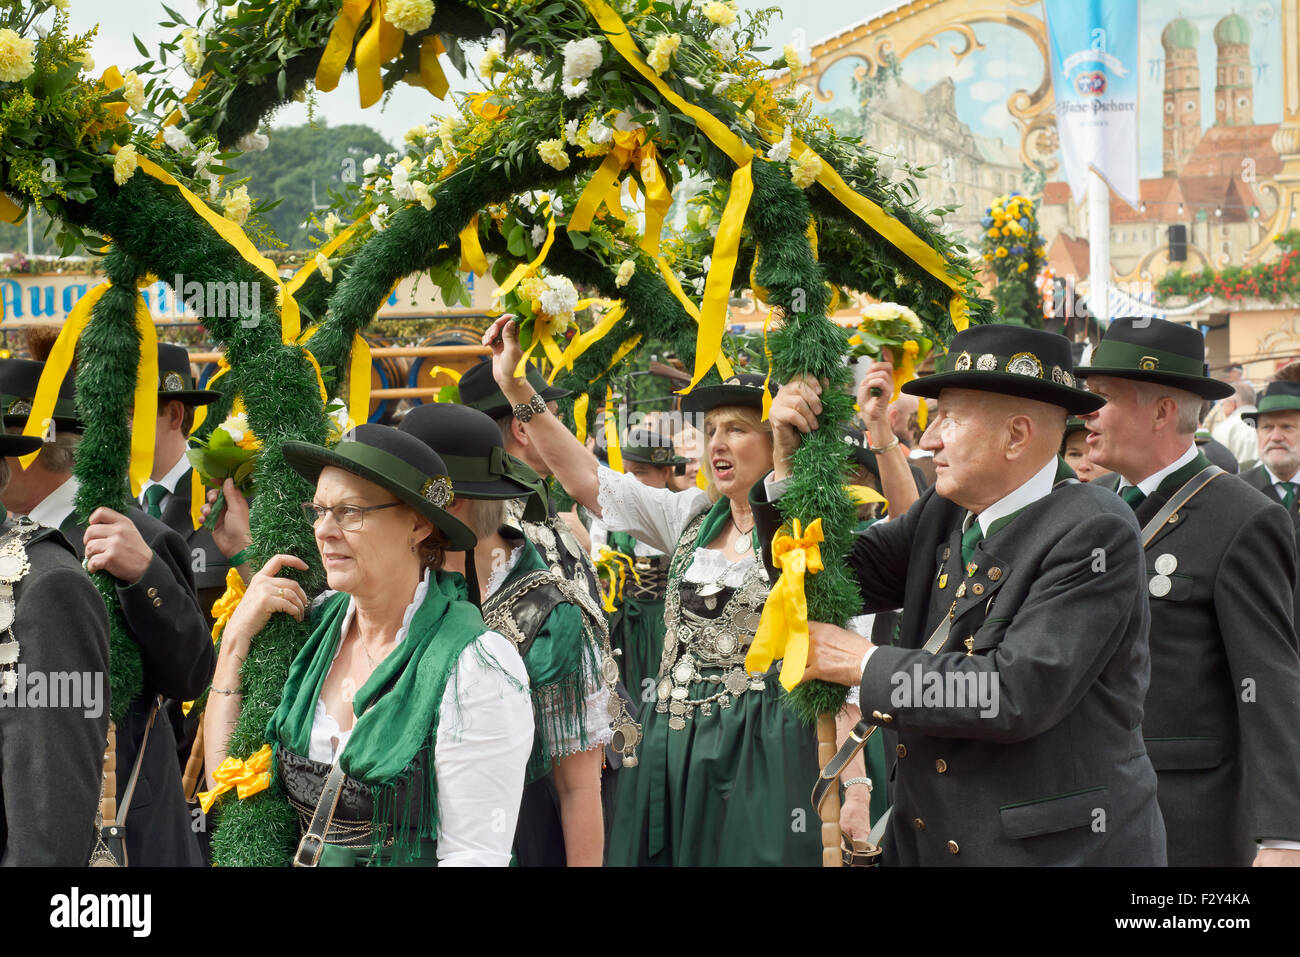 MÜNCHEN, DEUTSCHLAND – SEPT. 20, 2015: traditionelle marschieren Gruppe mit lokalen Kostümen unterhalten Scharen von Besuchern auf dem jährlichen Oktoberfest. Das Festival findet vom 19. September bis 4. Oktober 2015 in München. Stockfoto